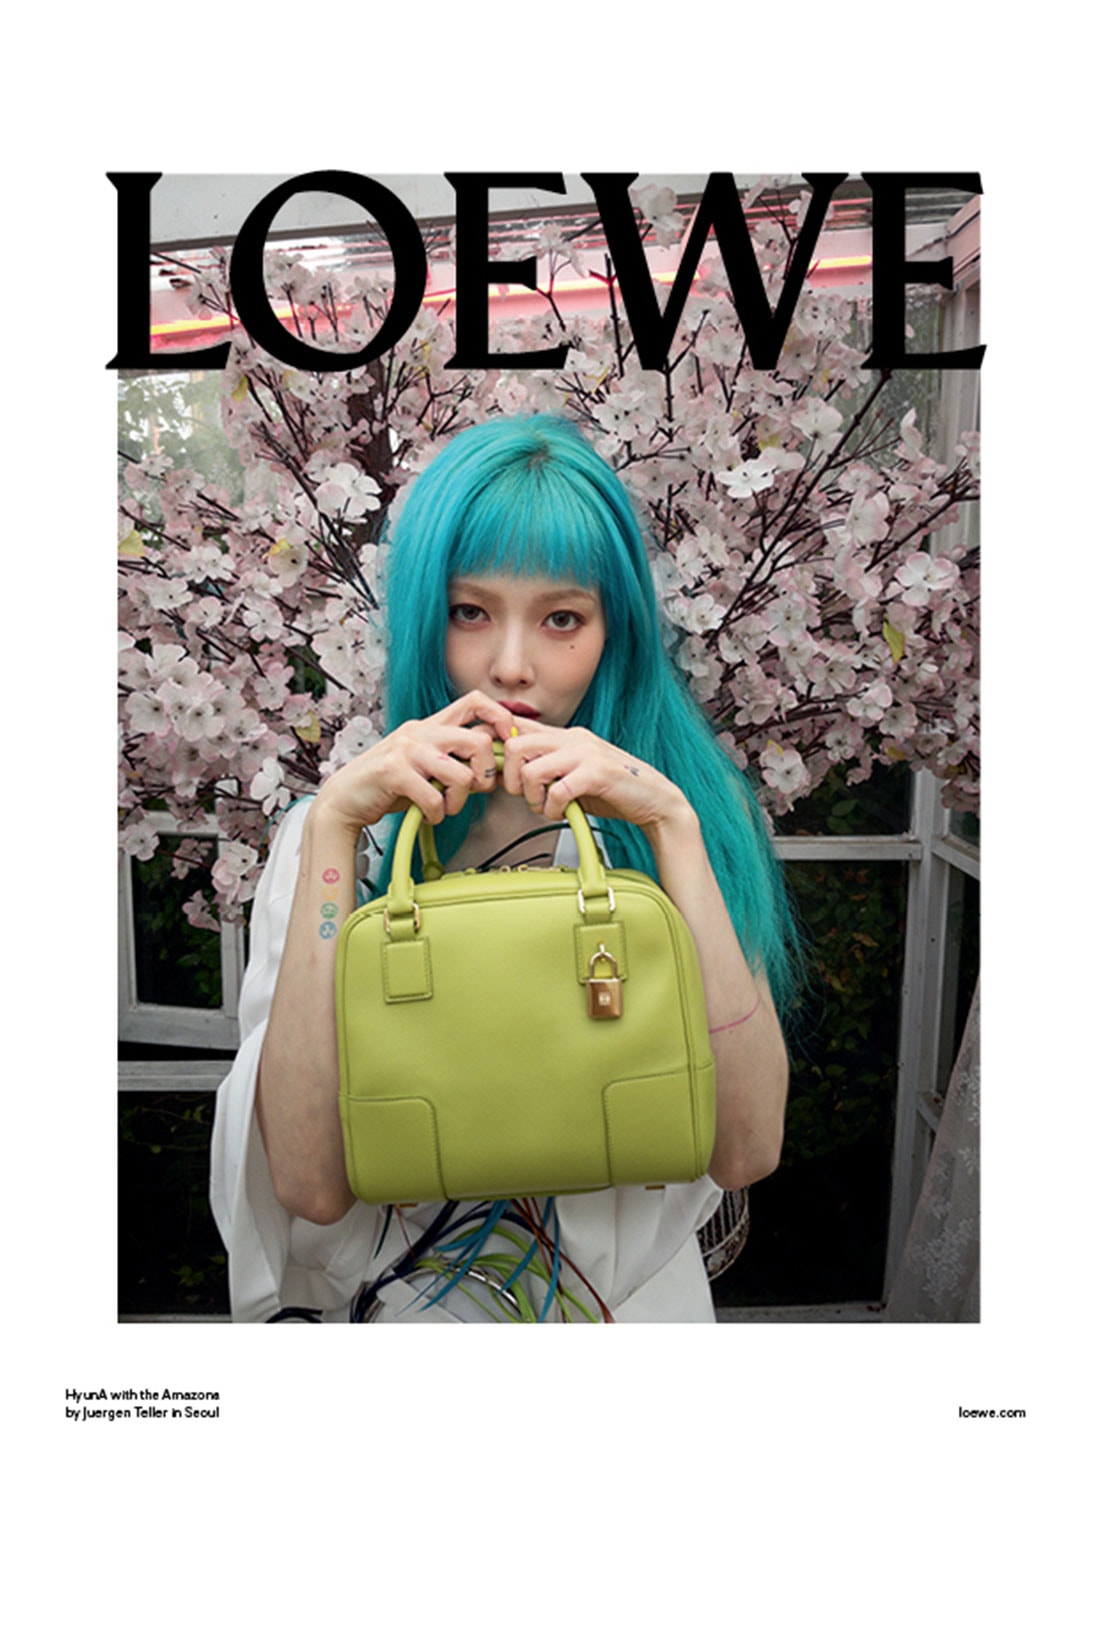 Loewe Amazona Handbag Campaign HyunA